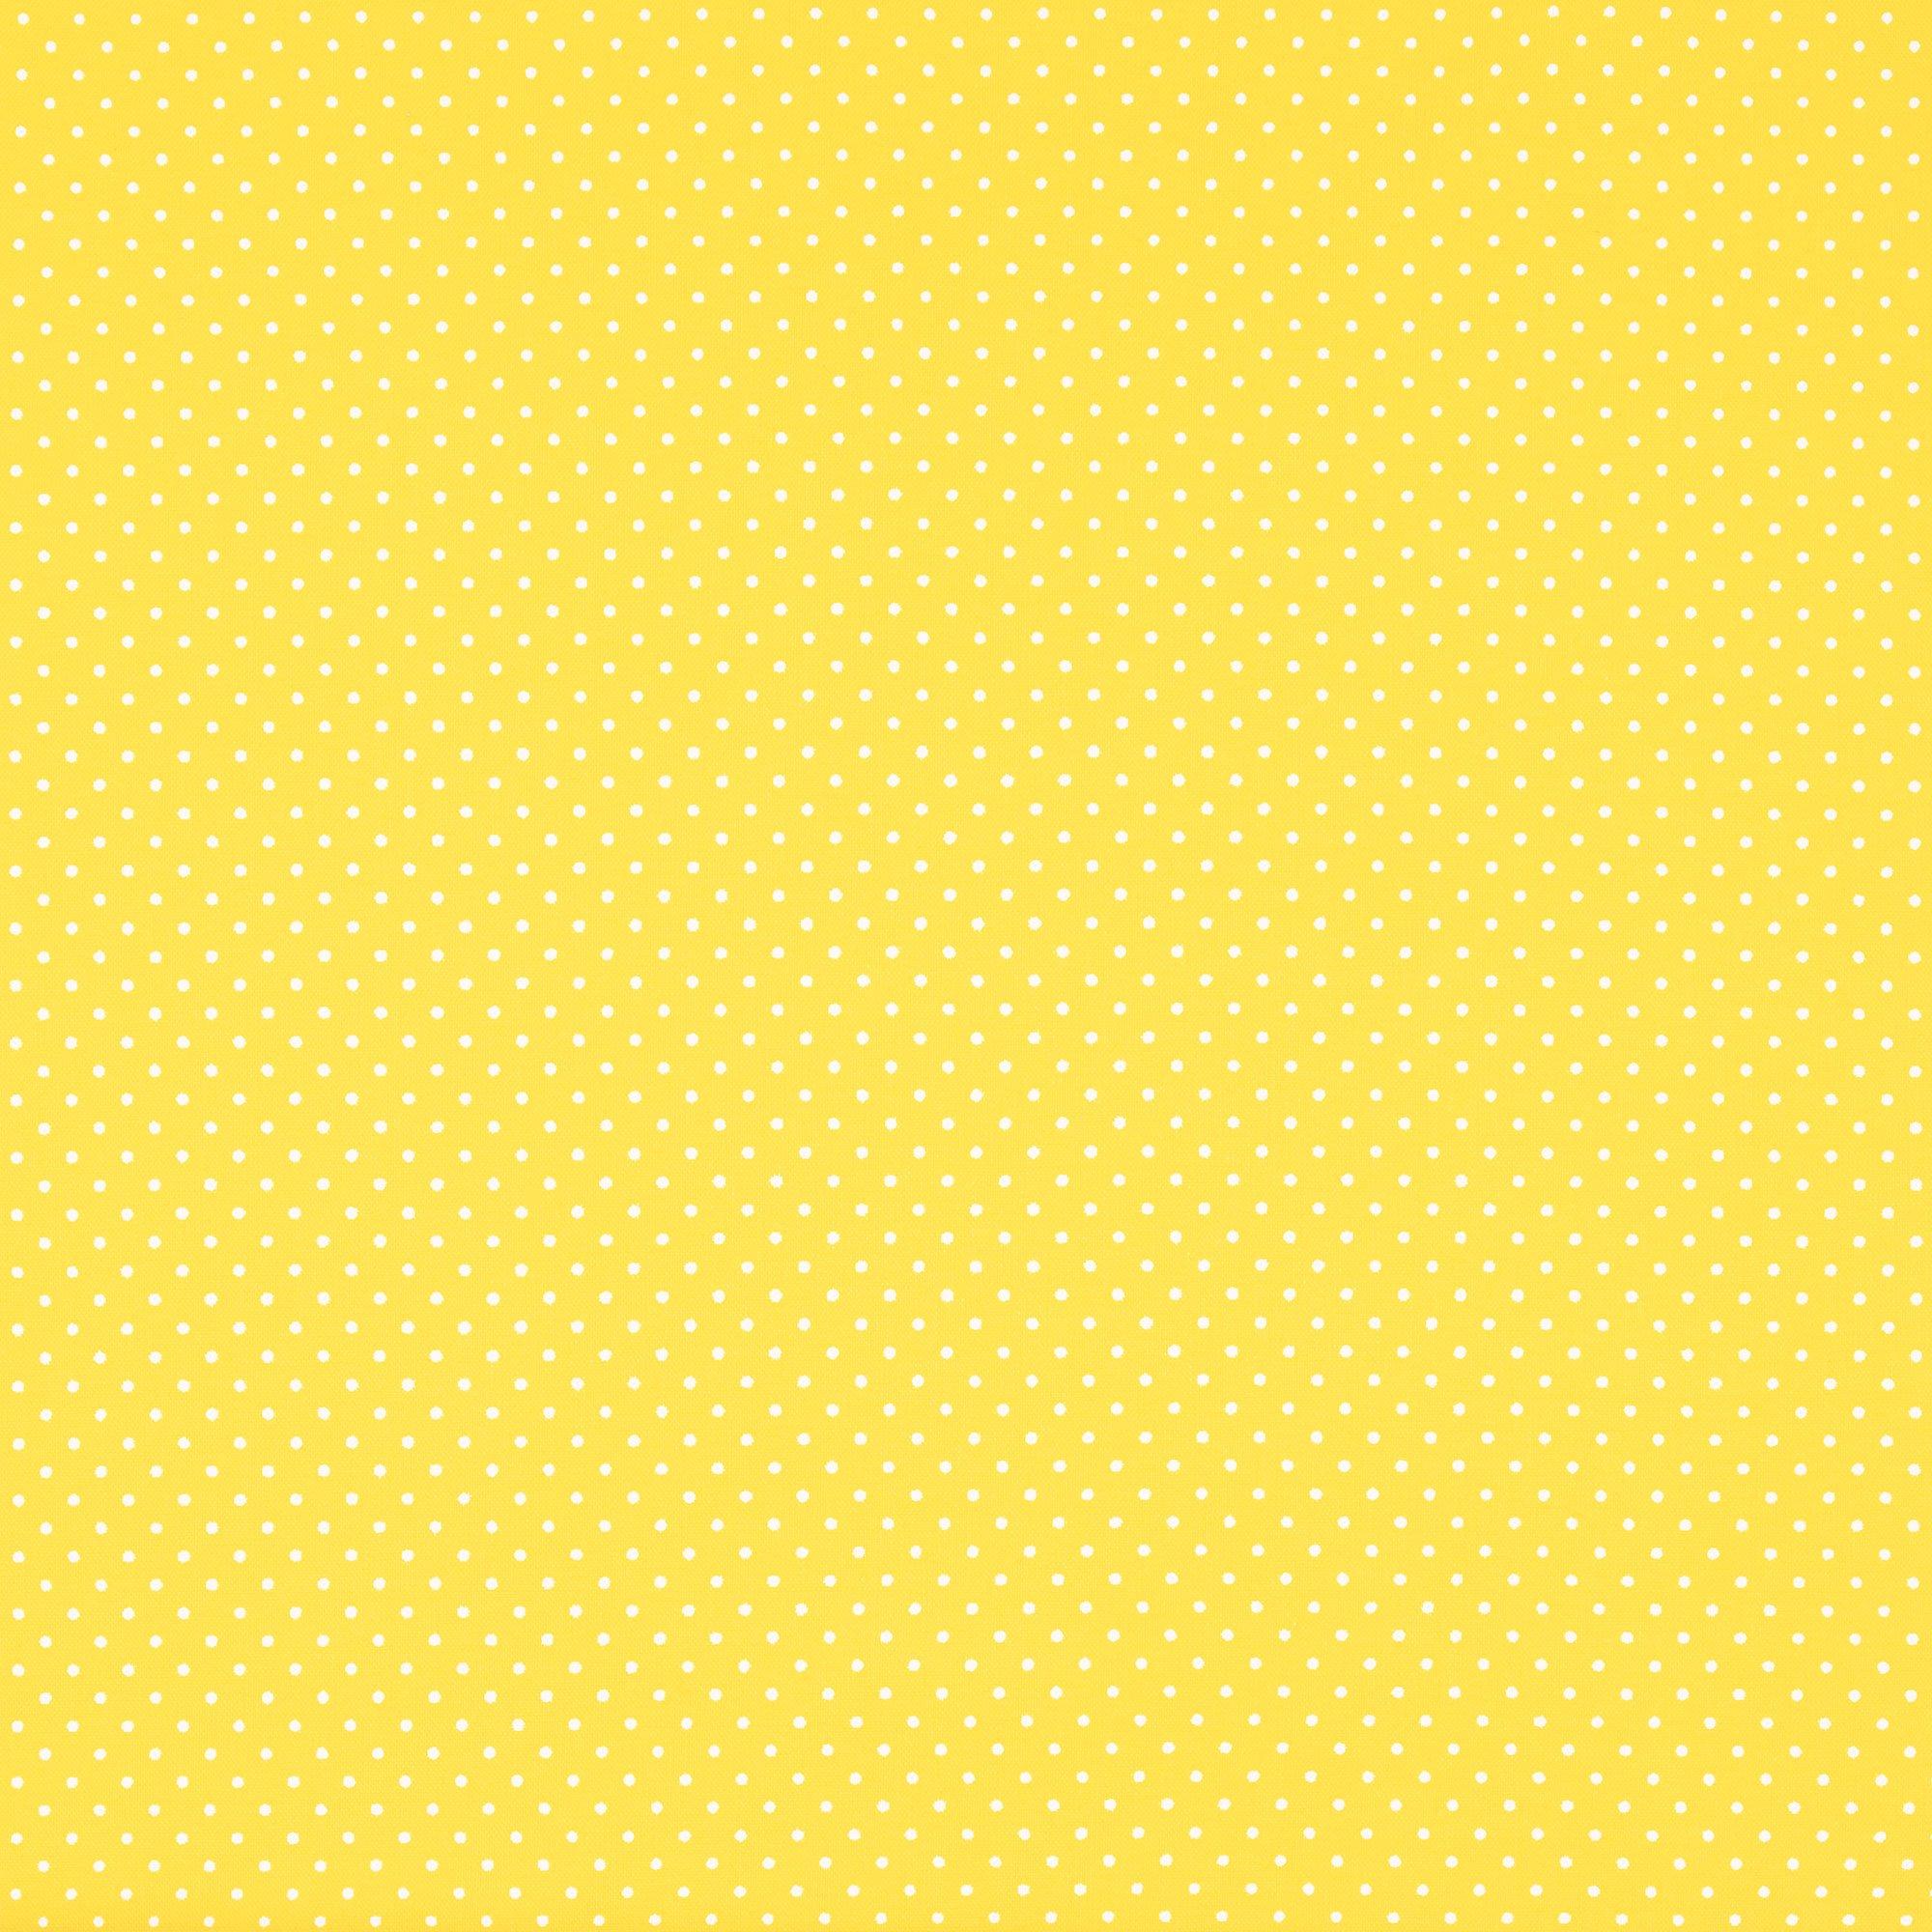 Mini Polka Dot Cotton Calico Fabric | Hobby Lobby | 443002